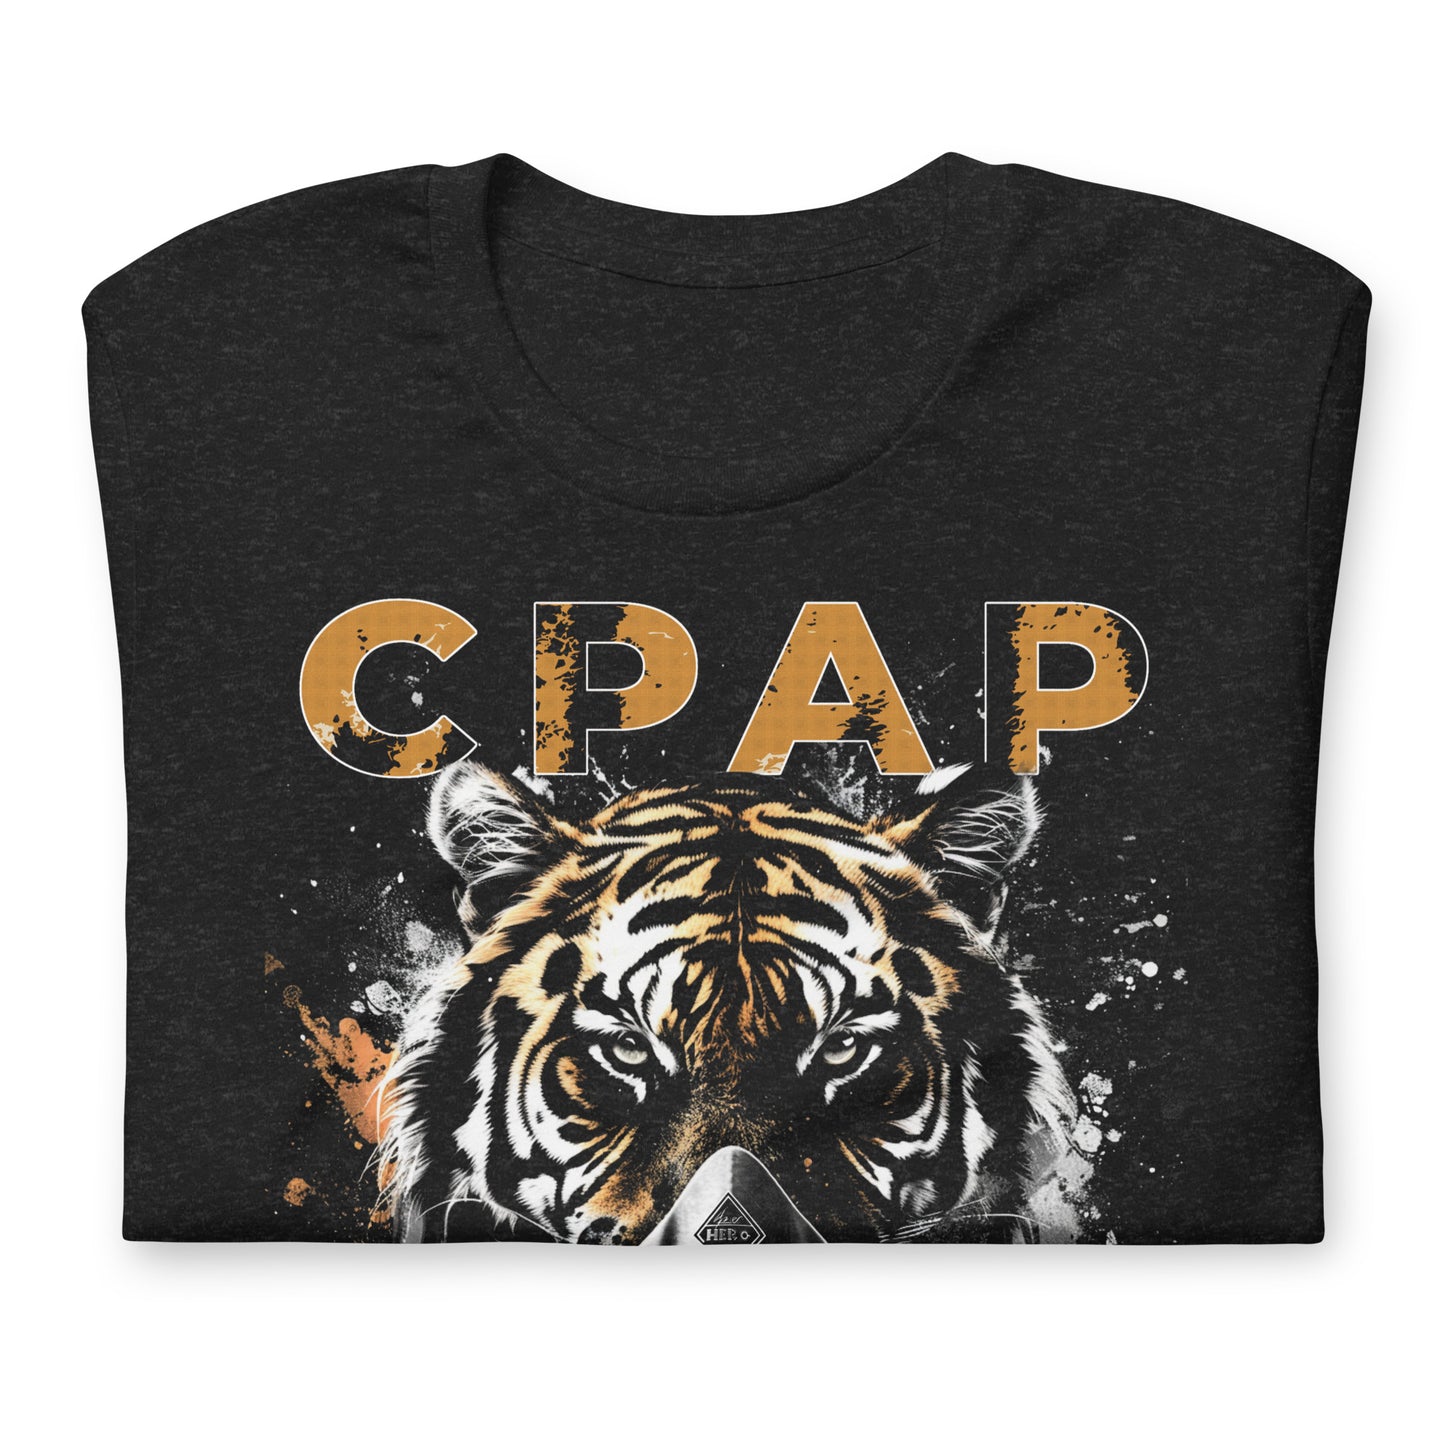 CPAP TIGER KING, Tiger King wearing CPAP, CPAP, Animals, Sleep Apnea, Graphic Tee Shirt, Black